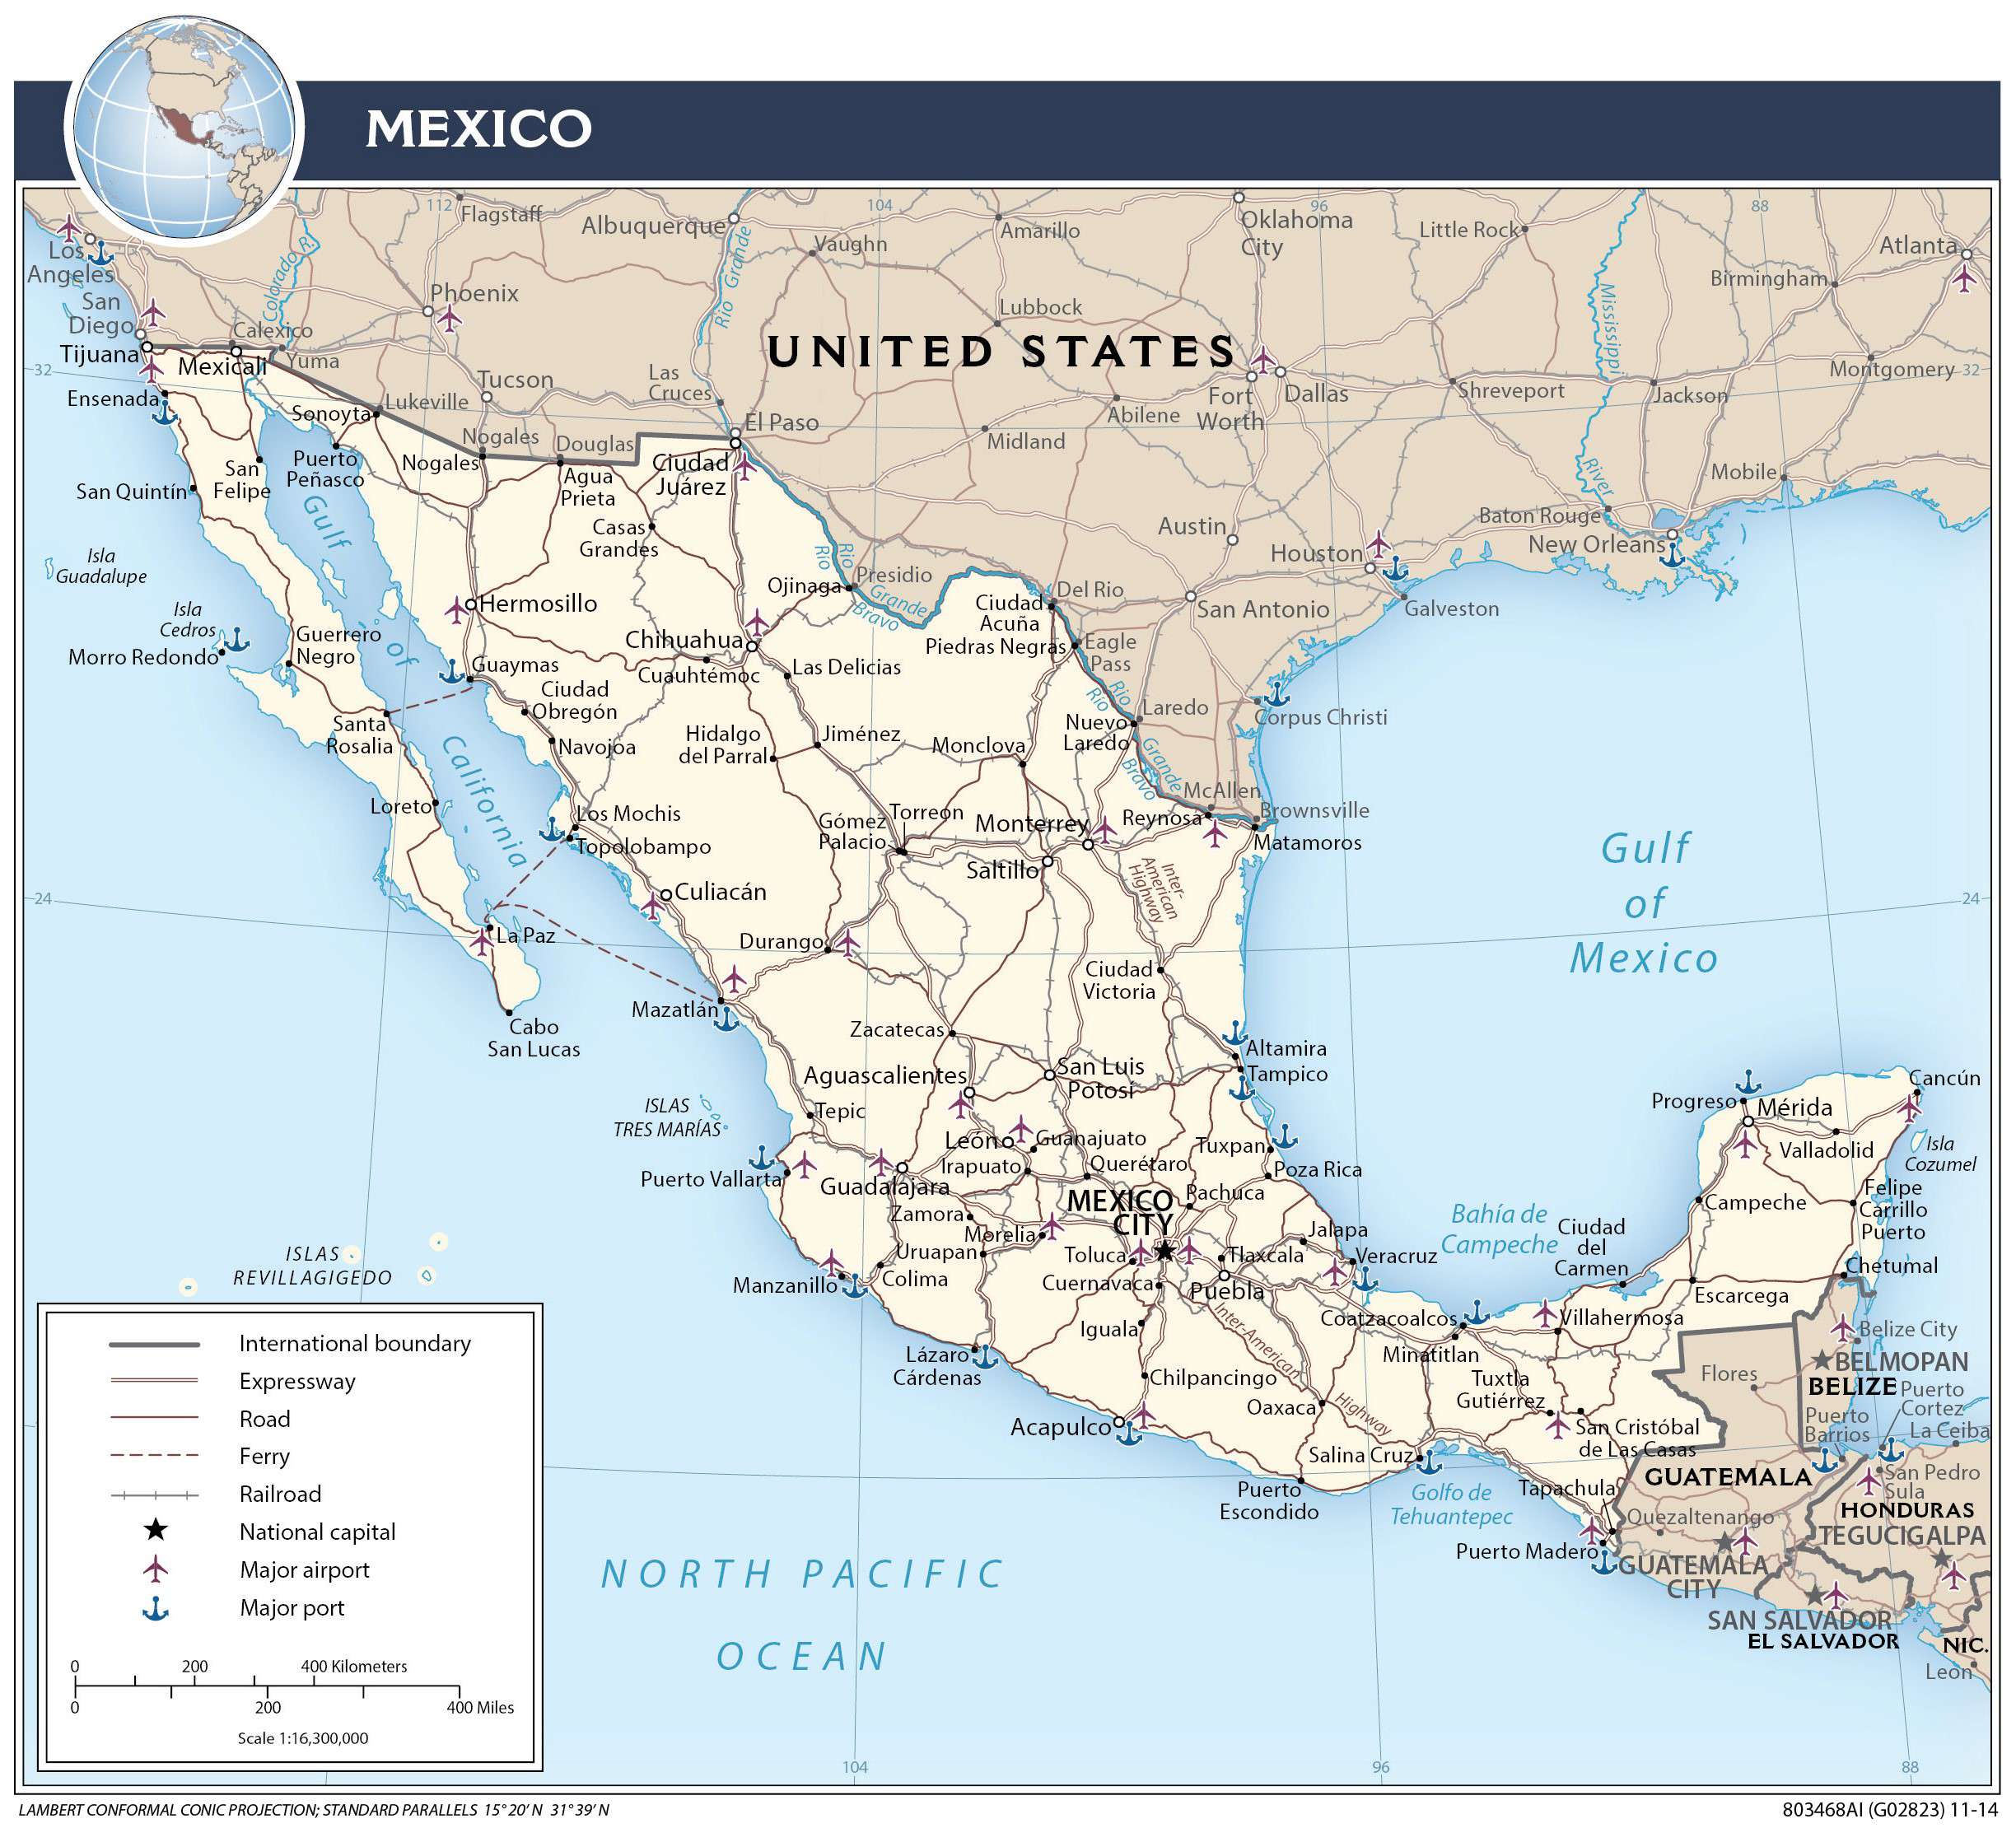 Cập nhật bản đồ Mexico trung Mỹ - châu Mỹ mới nhất tại đây! Nhận thông tin chi tiết về địa lý và diện tích Mexico để tìm kiếm cơ hội đầu tư thú vị.